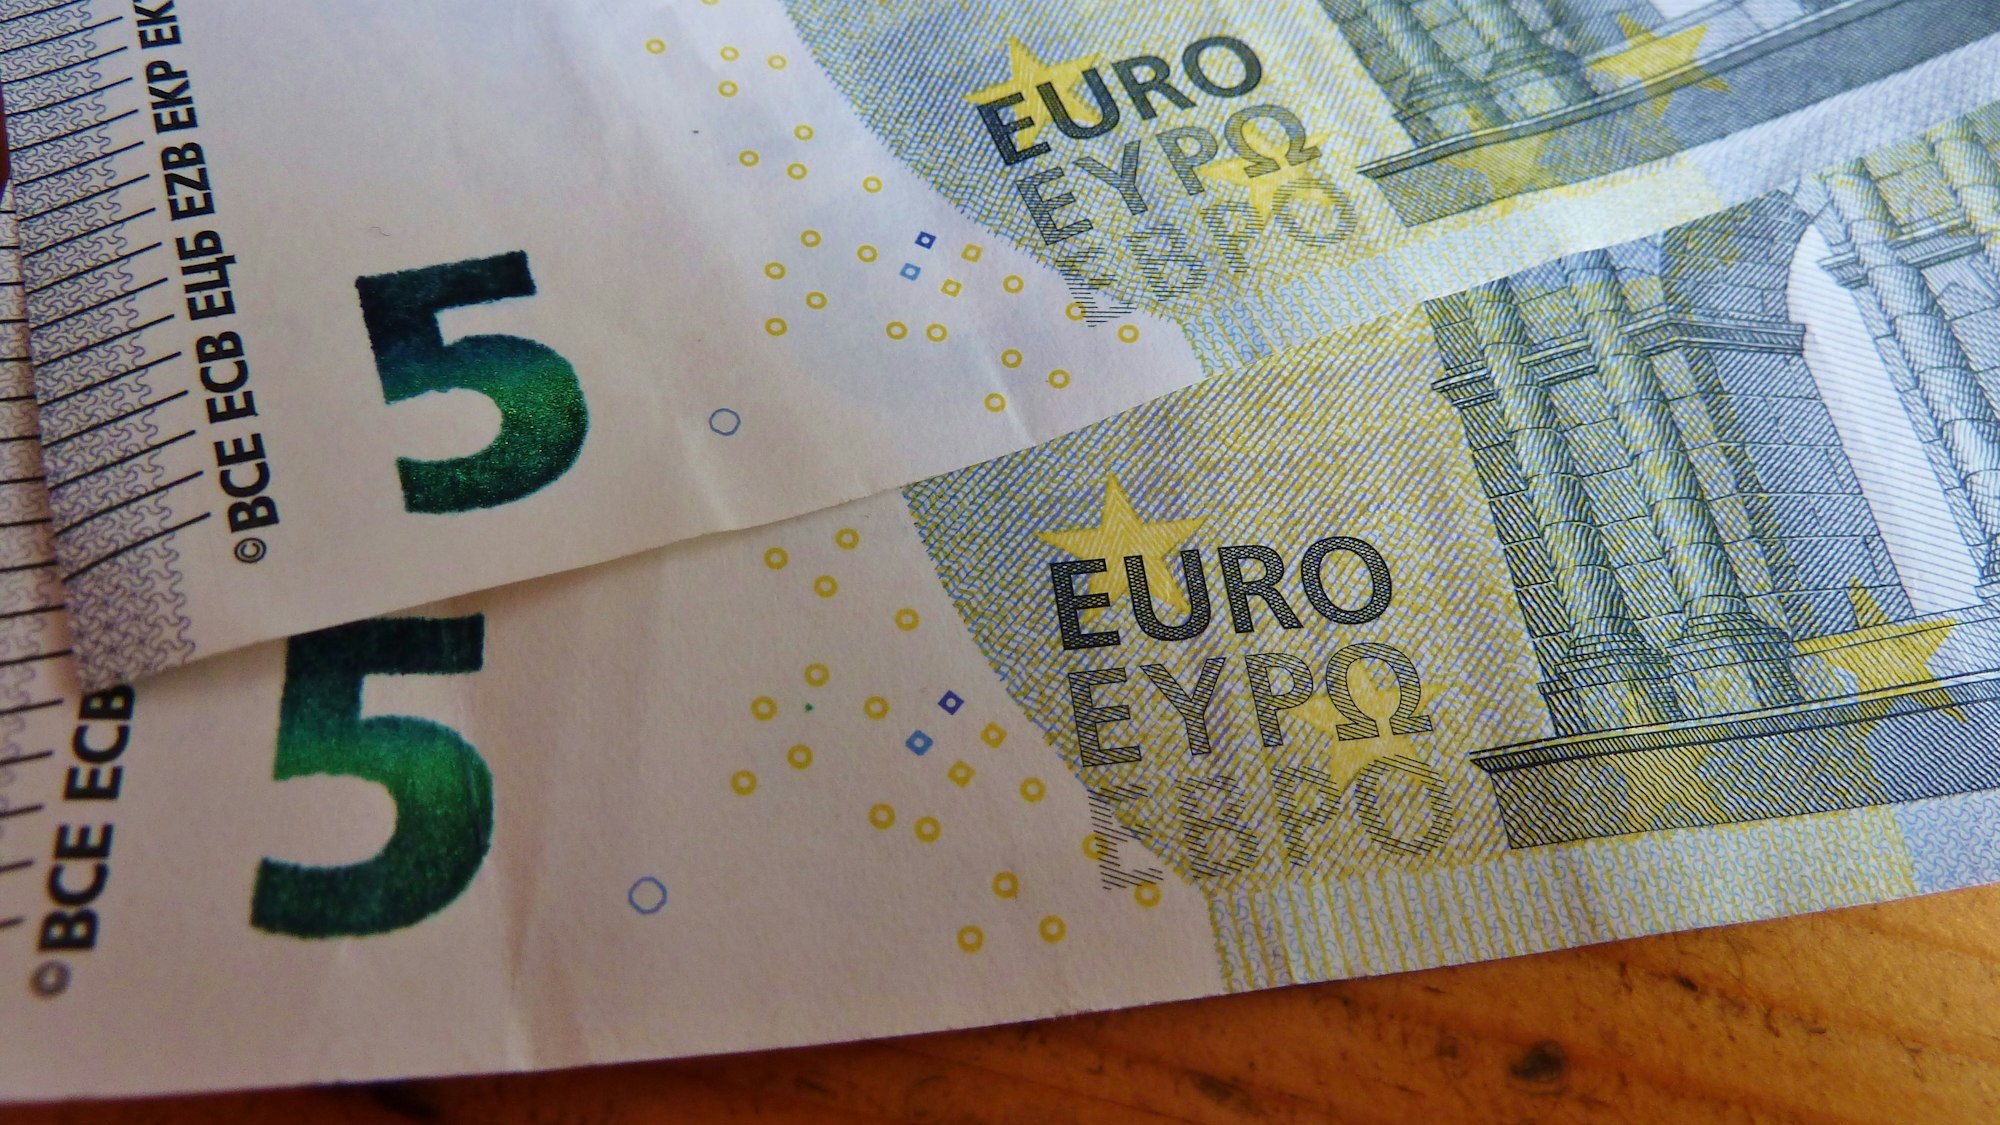 Zwei 5-Euro-Scheine liegen auf einem Tisch. Symbolbild